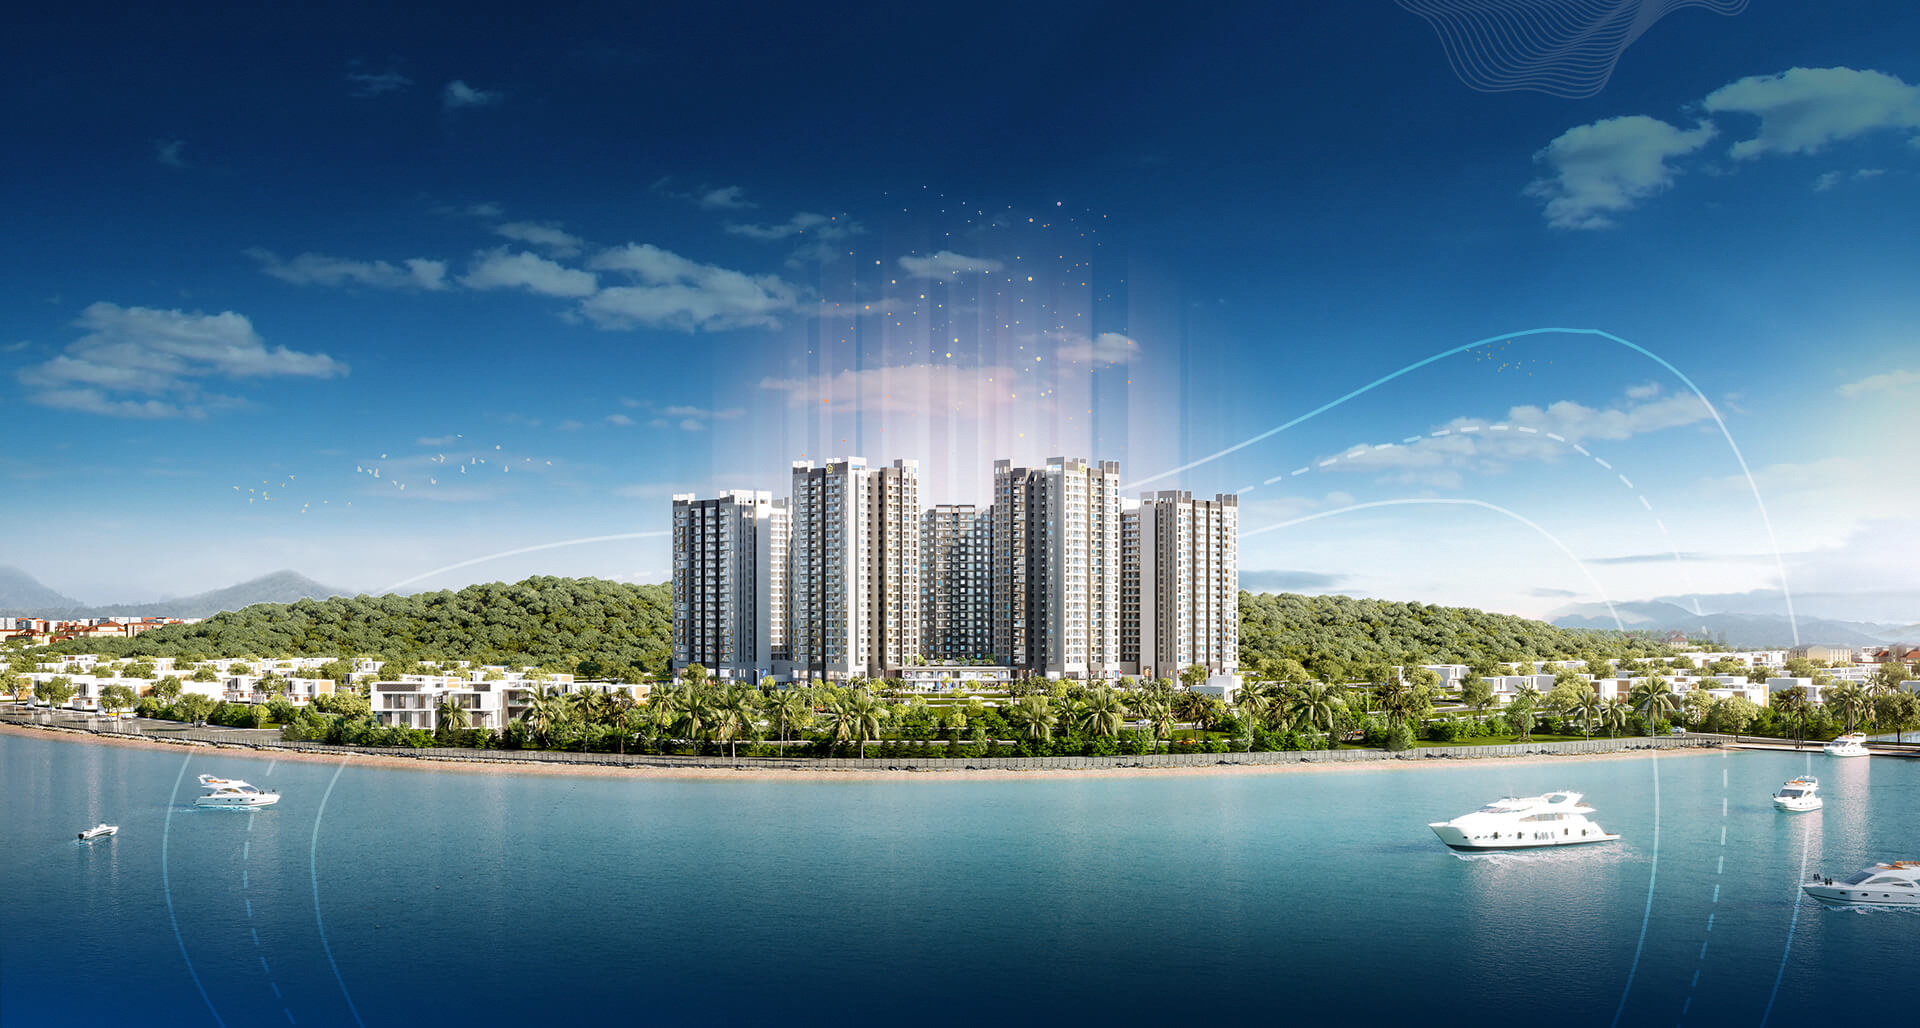 Tiện ích xanh đa tầng tại căn hộ biển Nha Trang